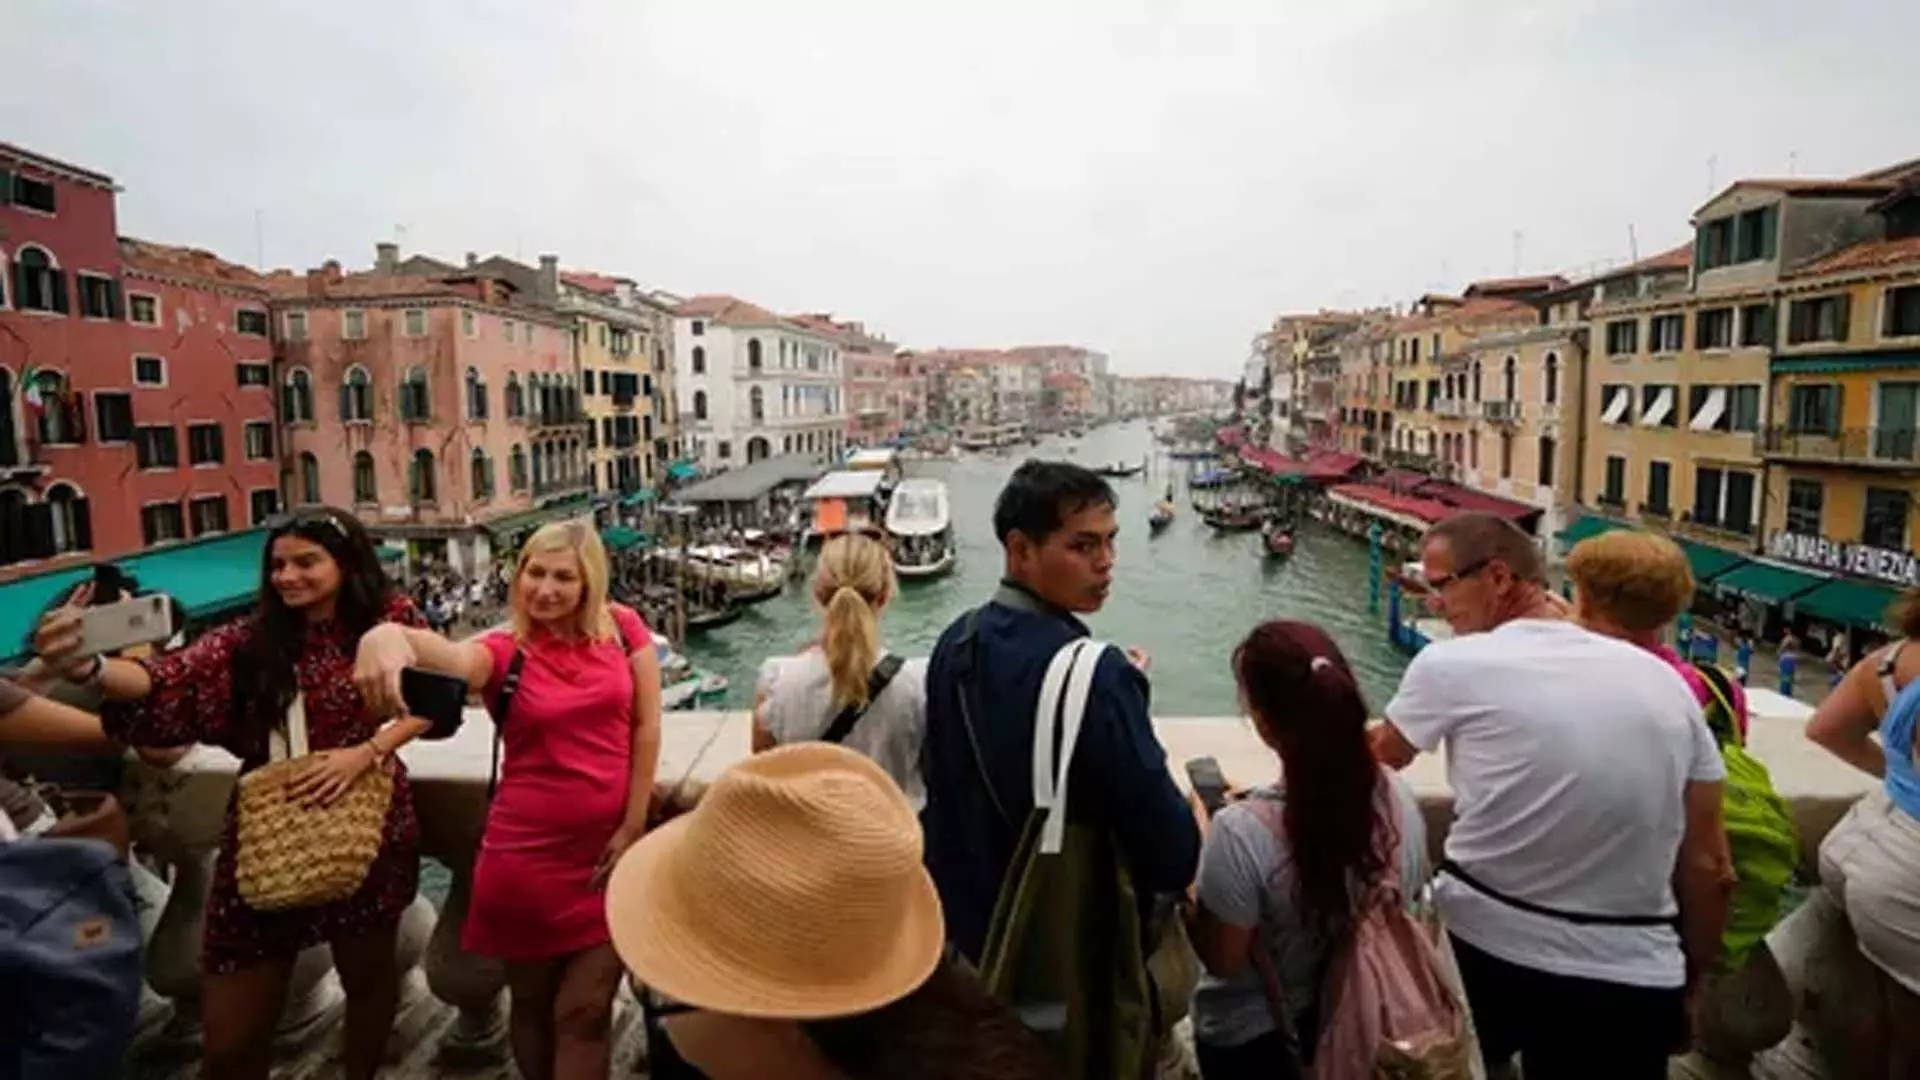 वेनिस ने ऐतिहासिक केंद्र में पर्यटकों की भीड़भाड़ से निपटने के लिए प्रवेश शुल्क लागू